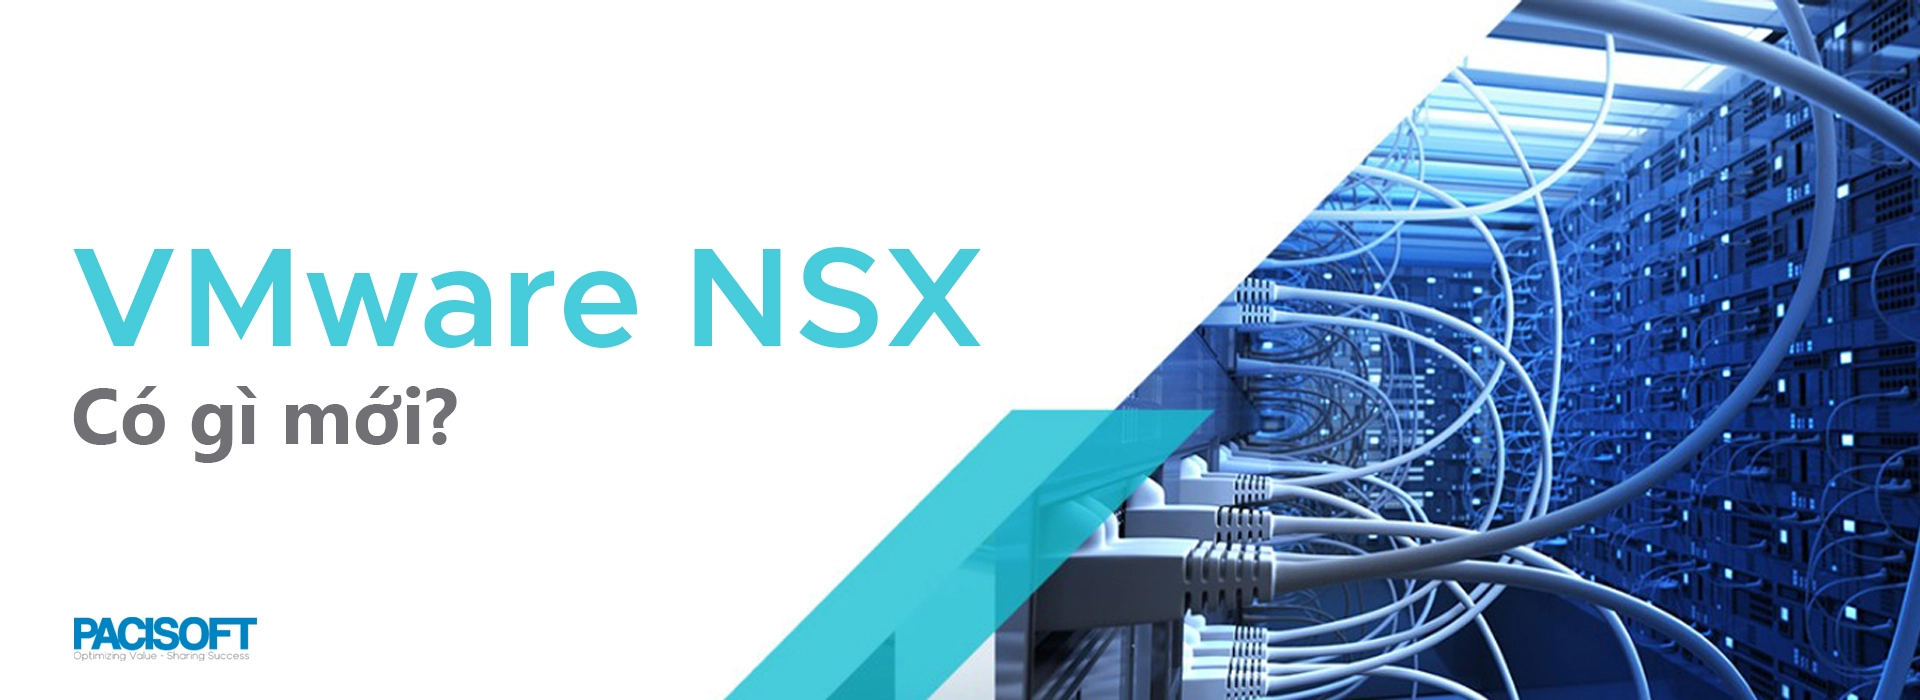 Phần mềm VMware NSX | Tính năng mới cho ảo hóa và bảo mật nâng cao